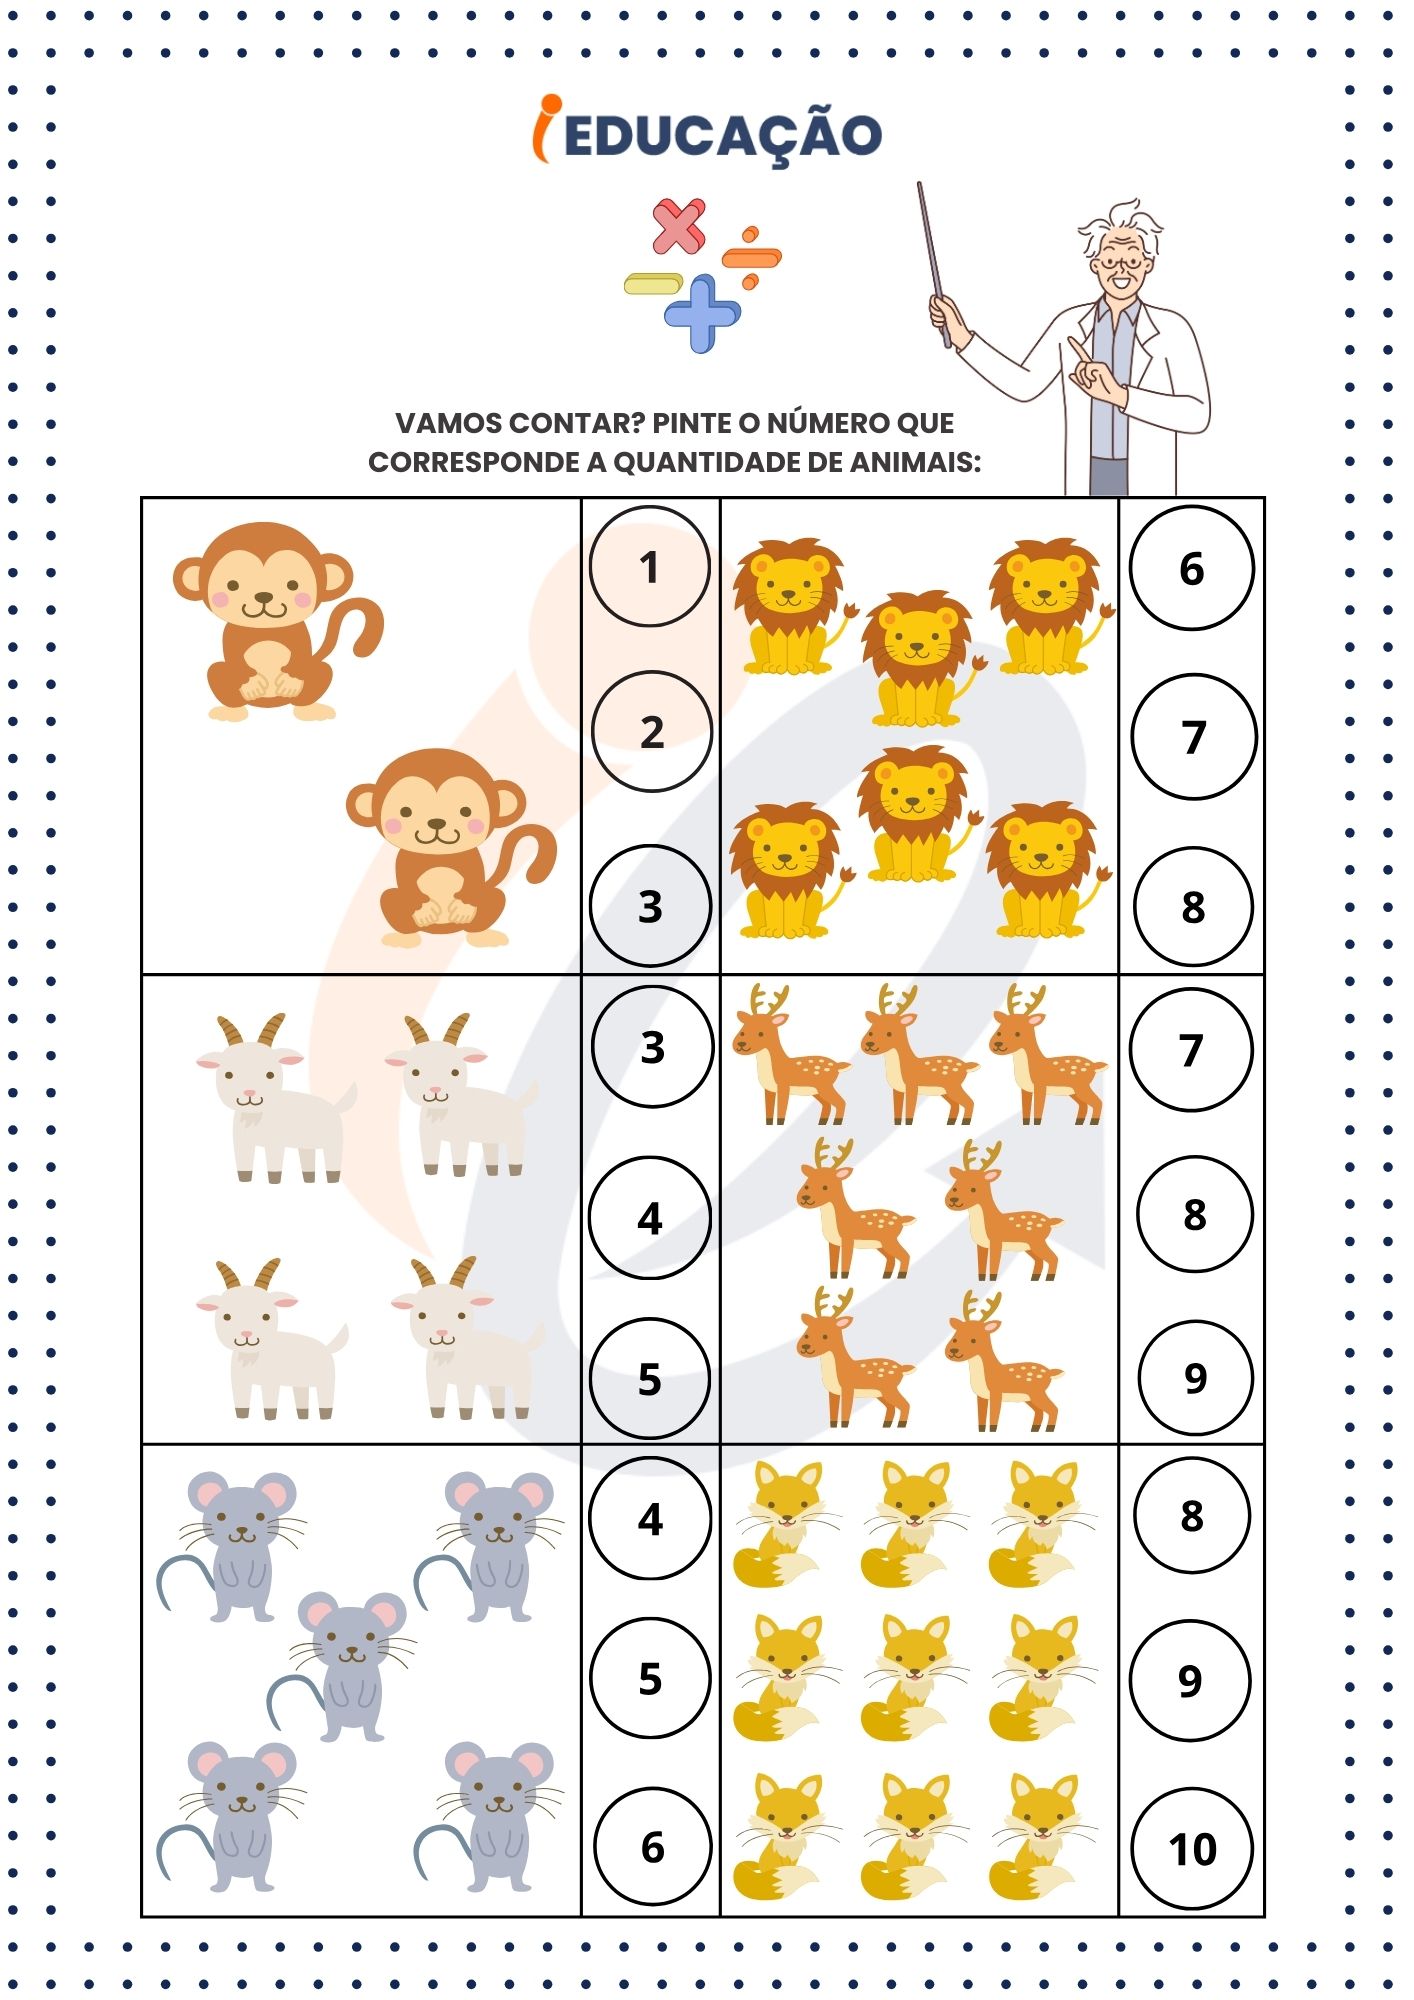 Atividade de matemática para educação infantil - Anexo do plano de aula iEducação.jpg